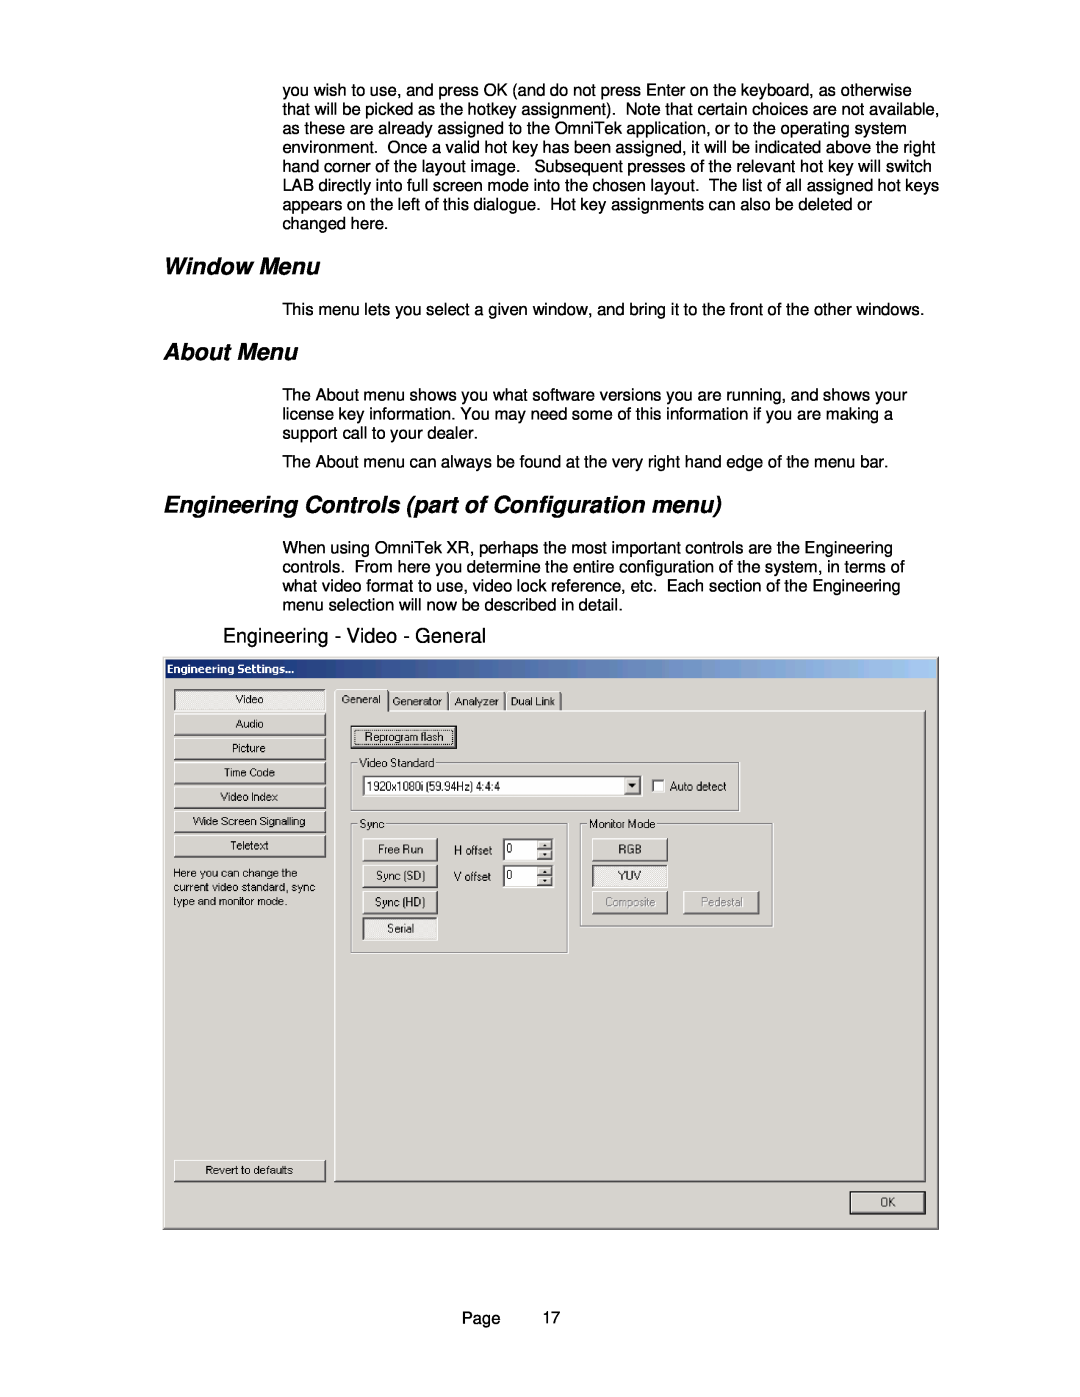 OmniTek OmniTek XR Window Menu, About Menu, Engineering Controls part of Configuration menu, Engineering - Video - General 